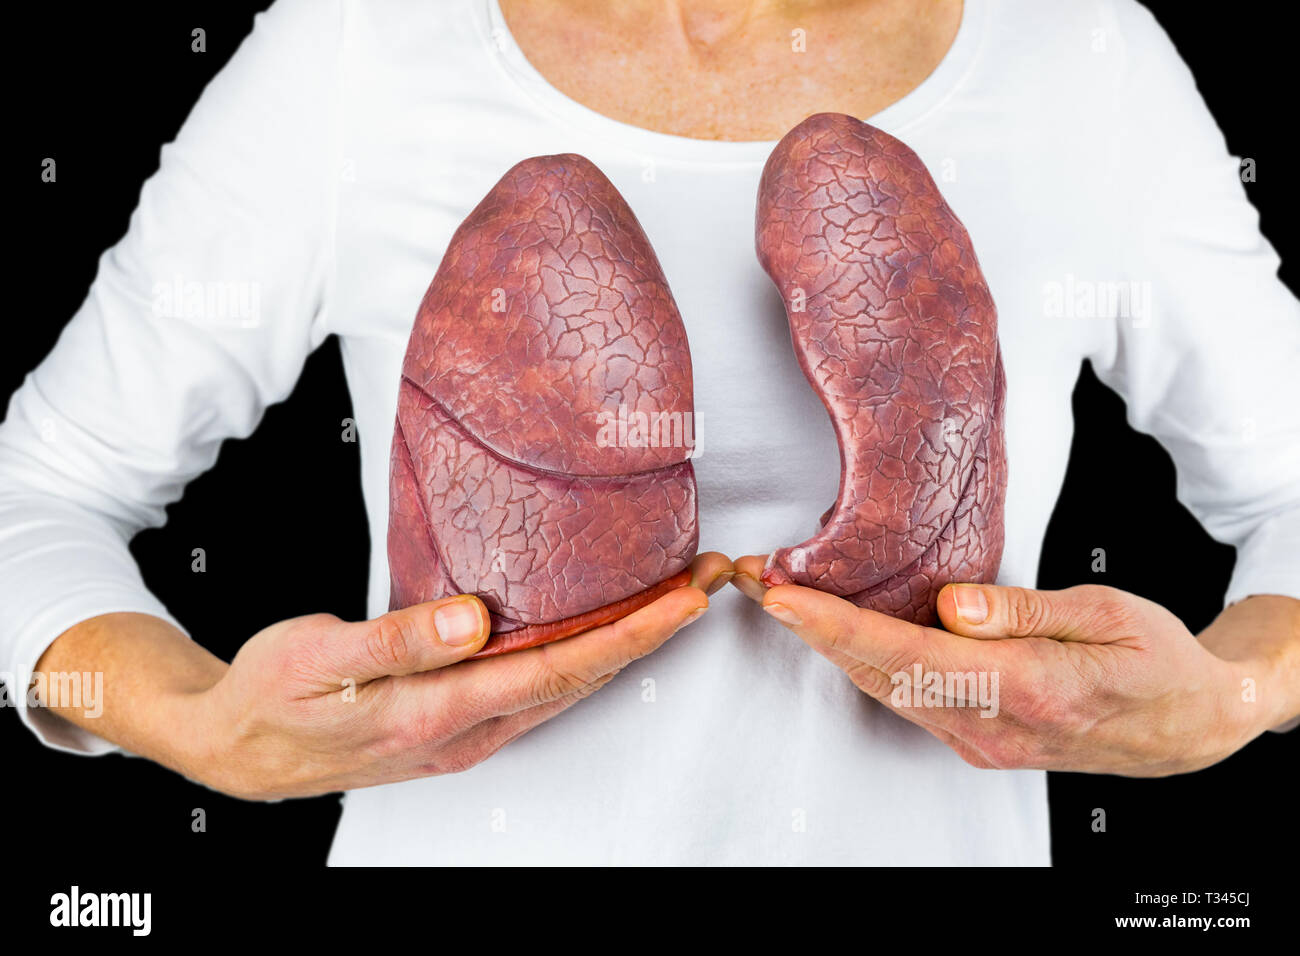 Frau hält Modelle der beiden Lungen am weißen Körper auf schwarzem Hintergrund Stockfoto